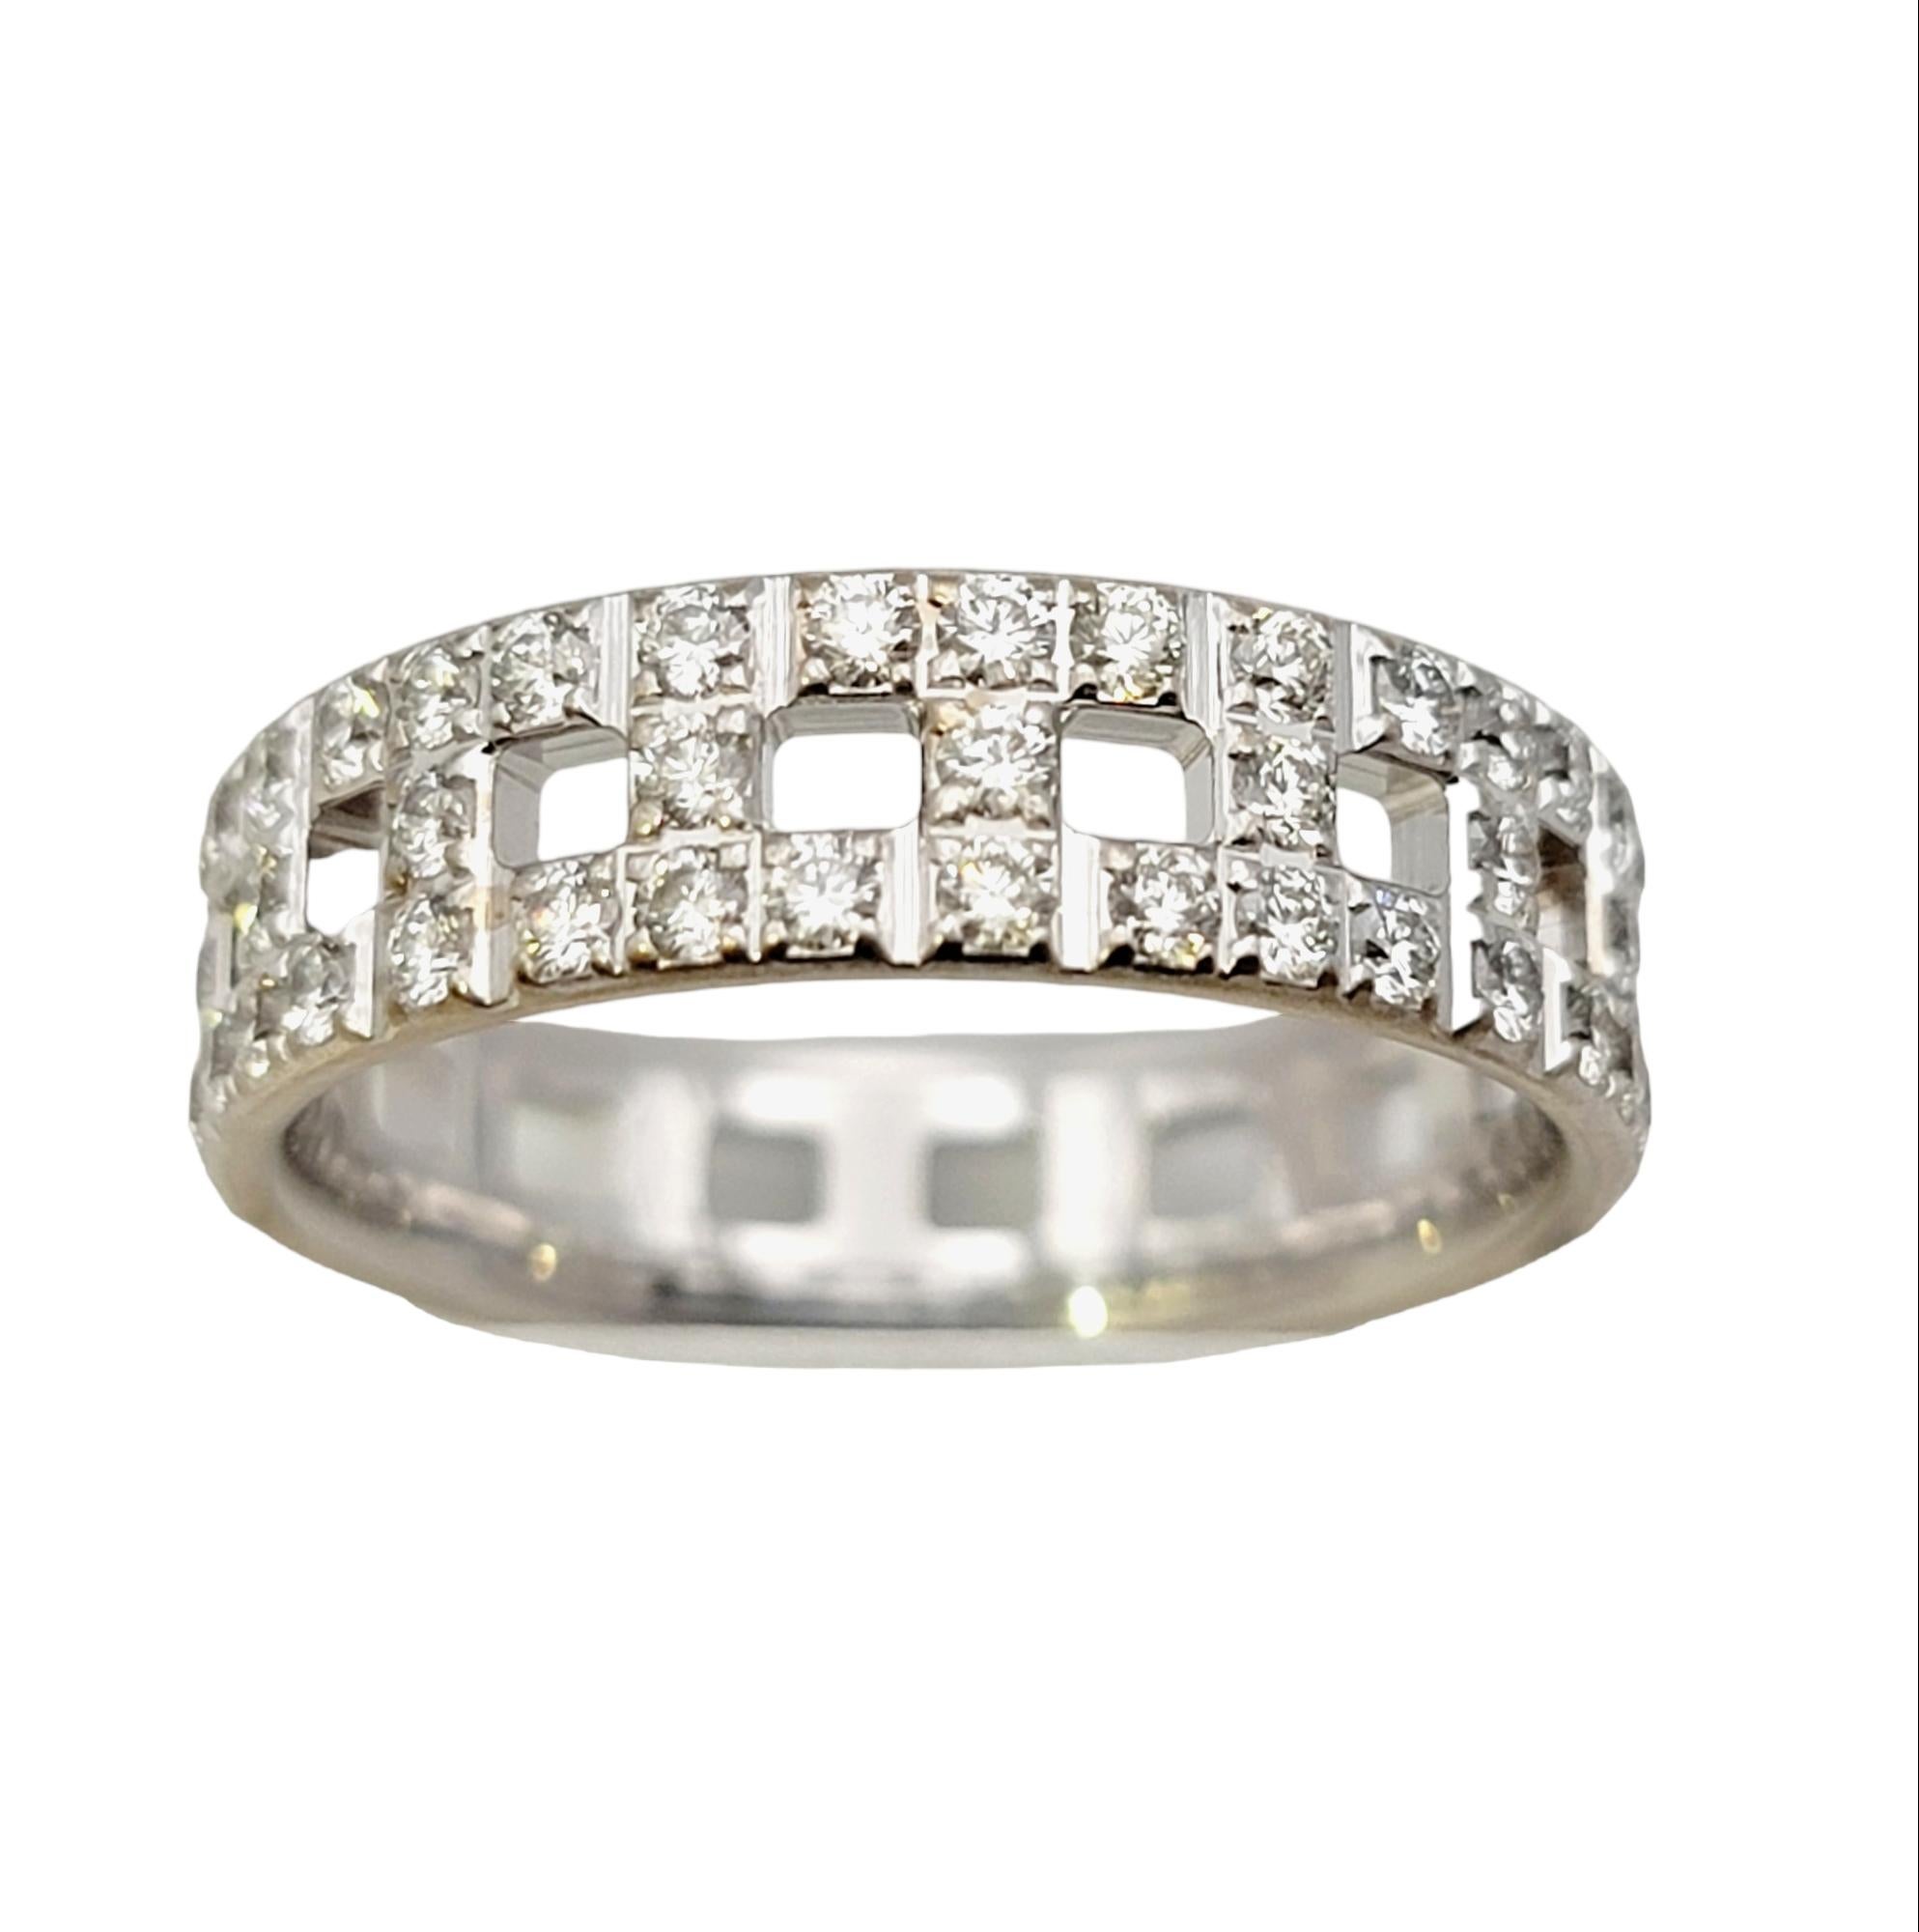 Taille de l'anneau : 7.5

L'éblouissante bague Tiffany à anneau de diamants AT&T est absolument saisissante au doigt.  Fondée en 1837 à New York, Tiffany & Co. est l'une des maisons de design de luxe les plus célèbres au monde, reconnue dans le